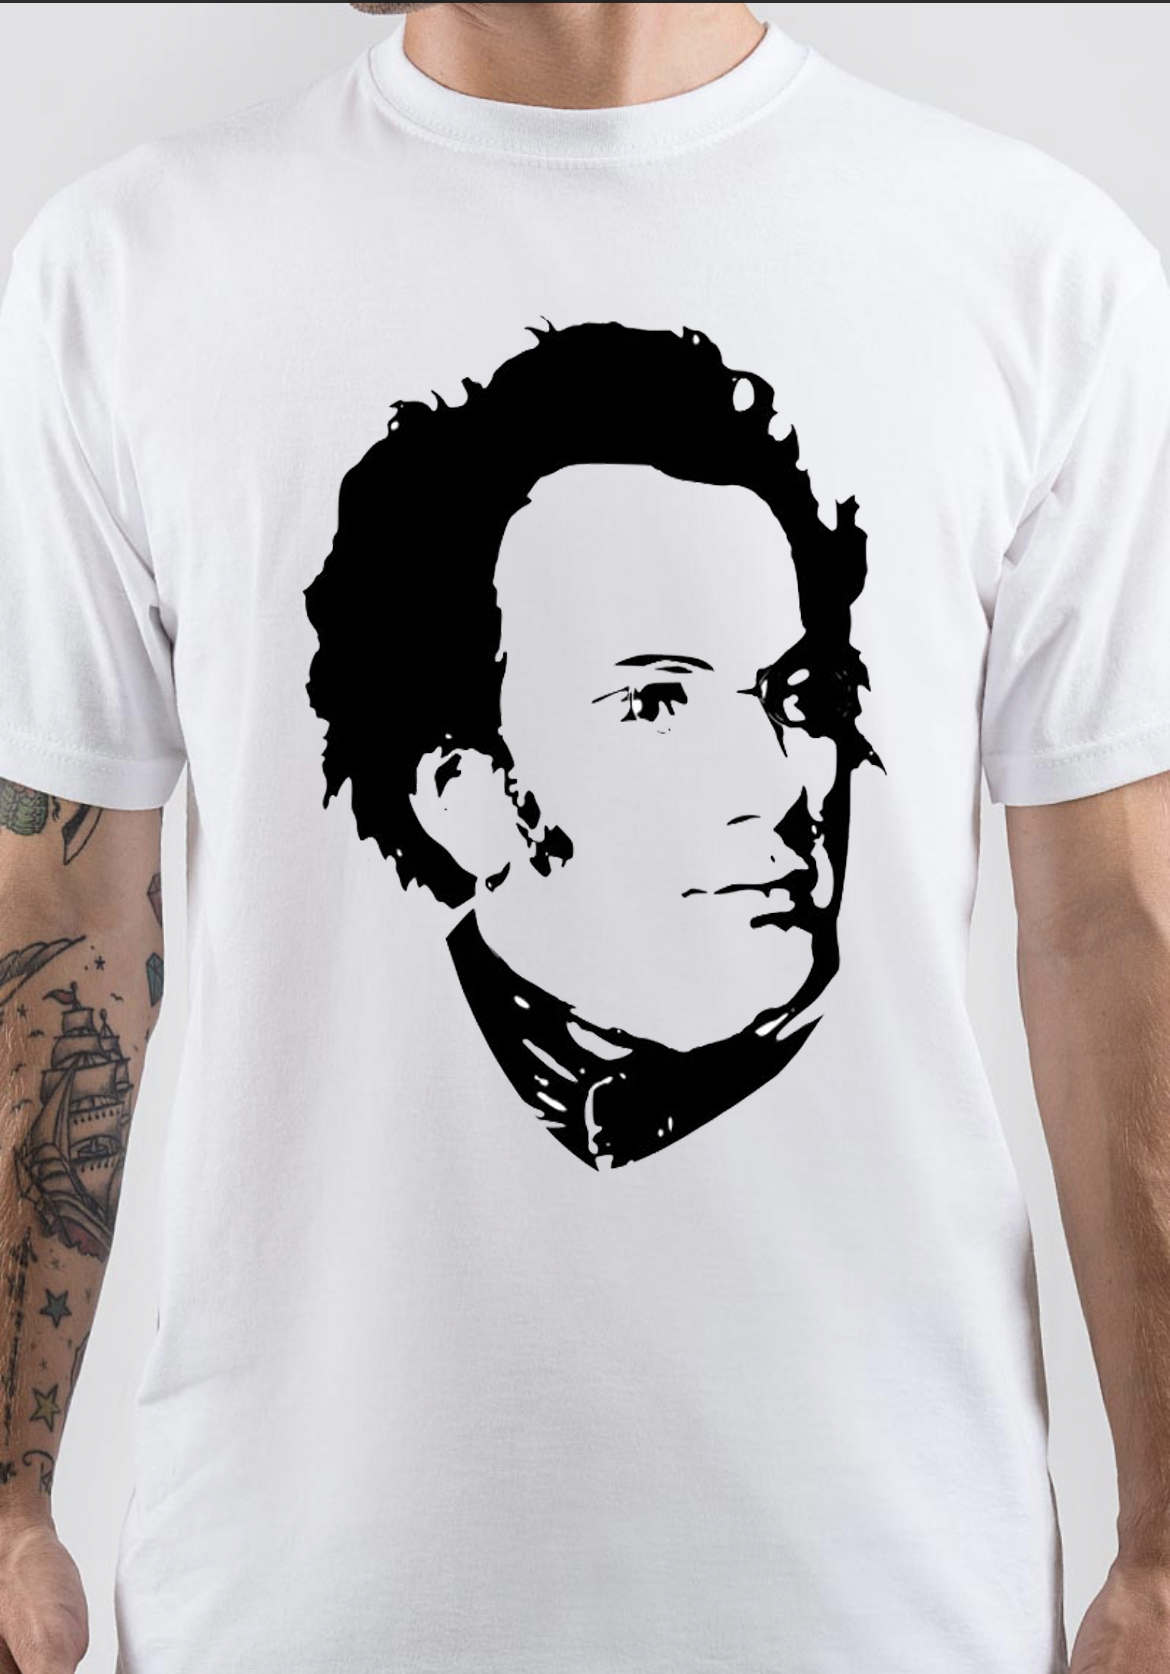 Franz Schubert T-Shirt And Merchandise